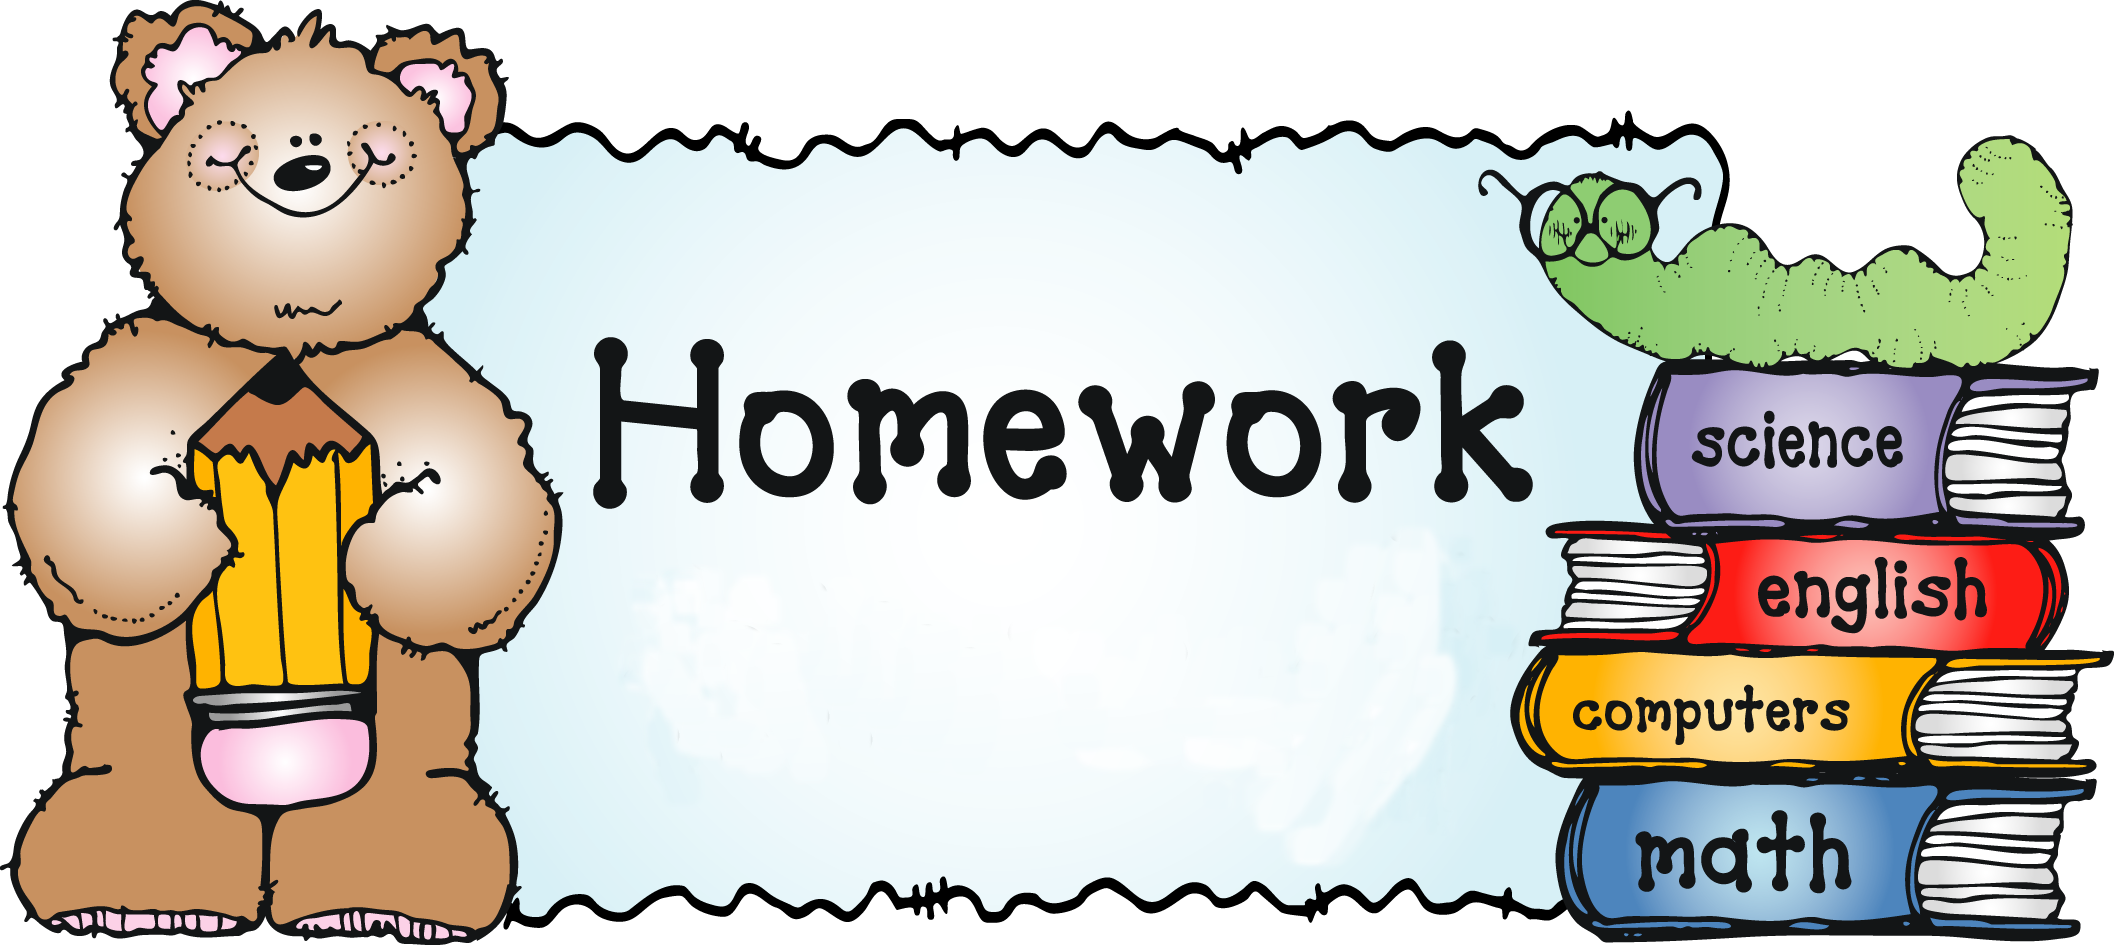 Homework pictures. Homework. Домашнее задание на английском. Homework картинка. Рисунки для презентации по английскому языку.